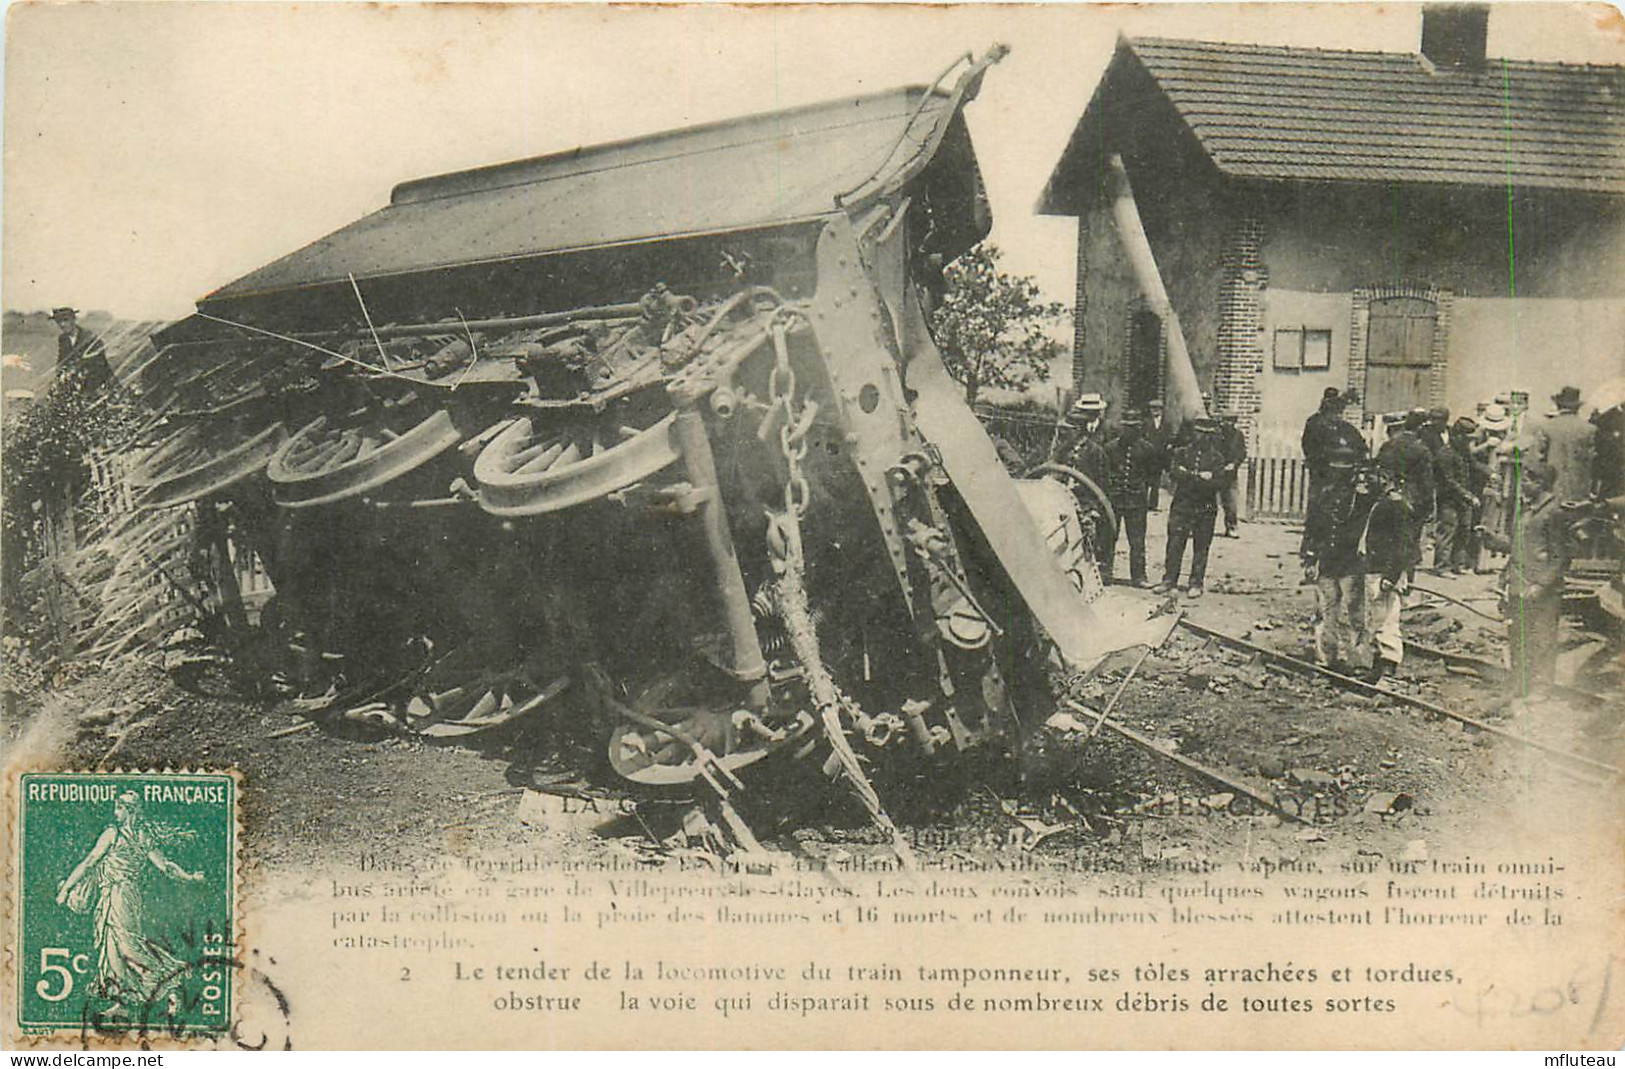 78* VILLEPREUX LES CLAYES  Catastrophe Ferroviaire 18 Juin 1910     RL09.0372 - Villepreux